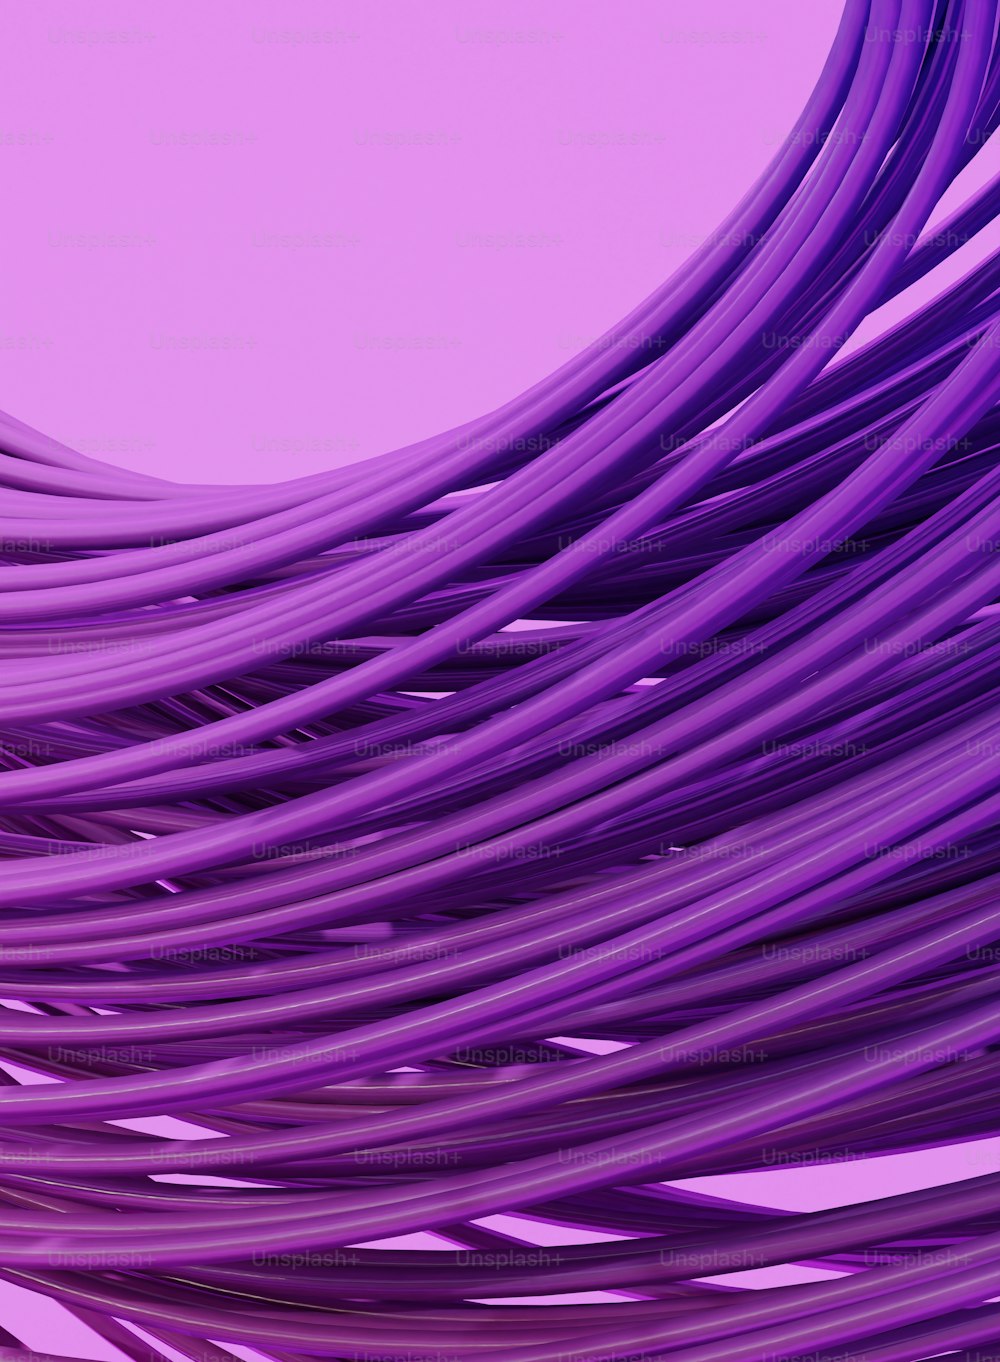 Un montón de cables púrpuras sobre un fondo púrpura